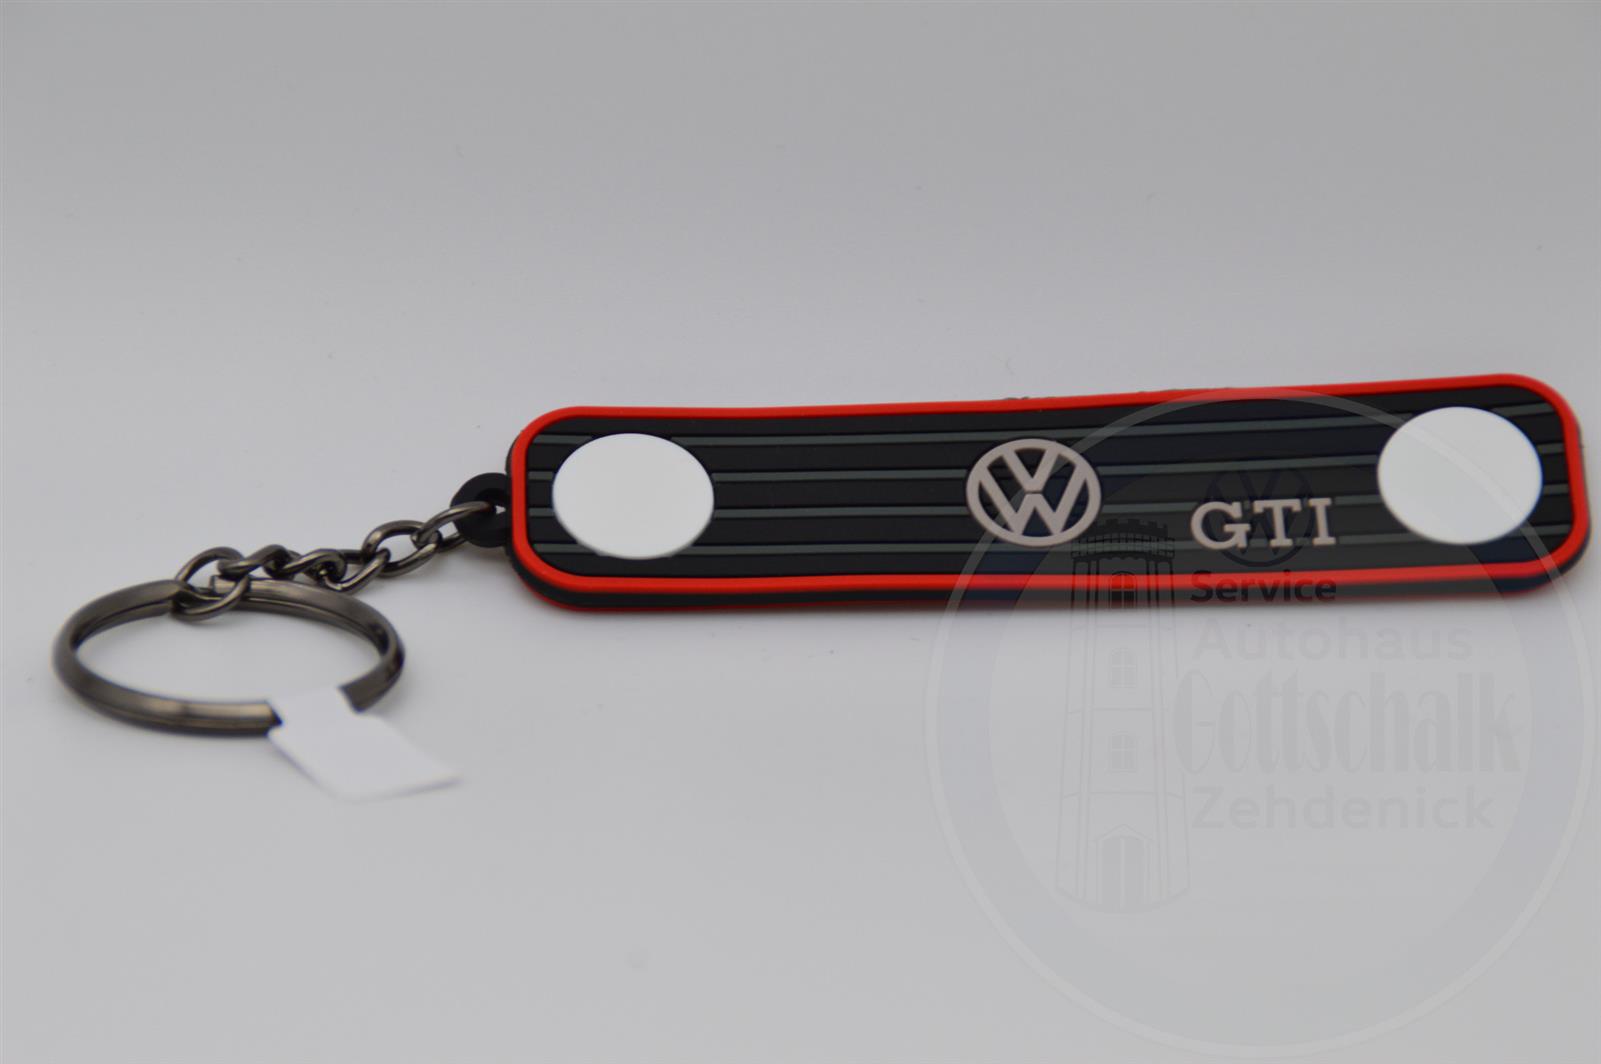 Volkswagen VW Golf 1 GTI VW Golf 2 GTI Schlüsselanhänger